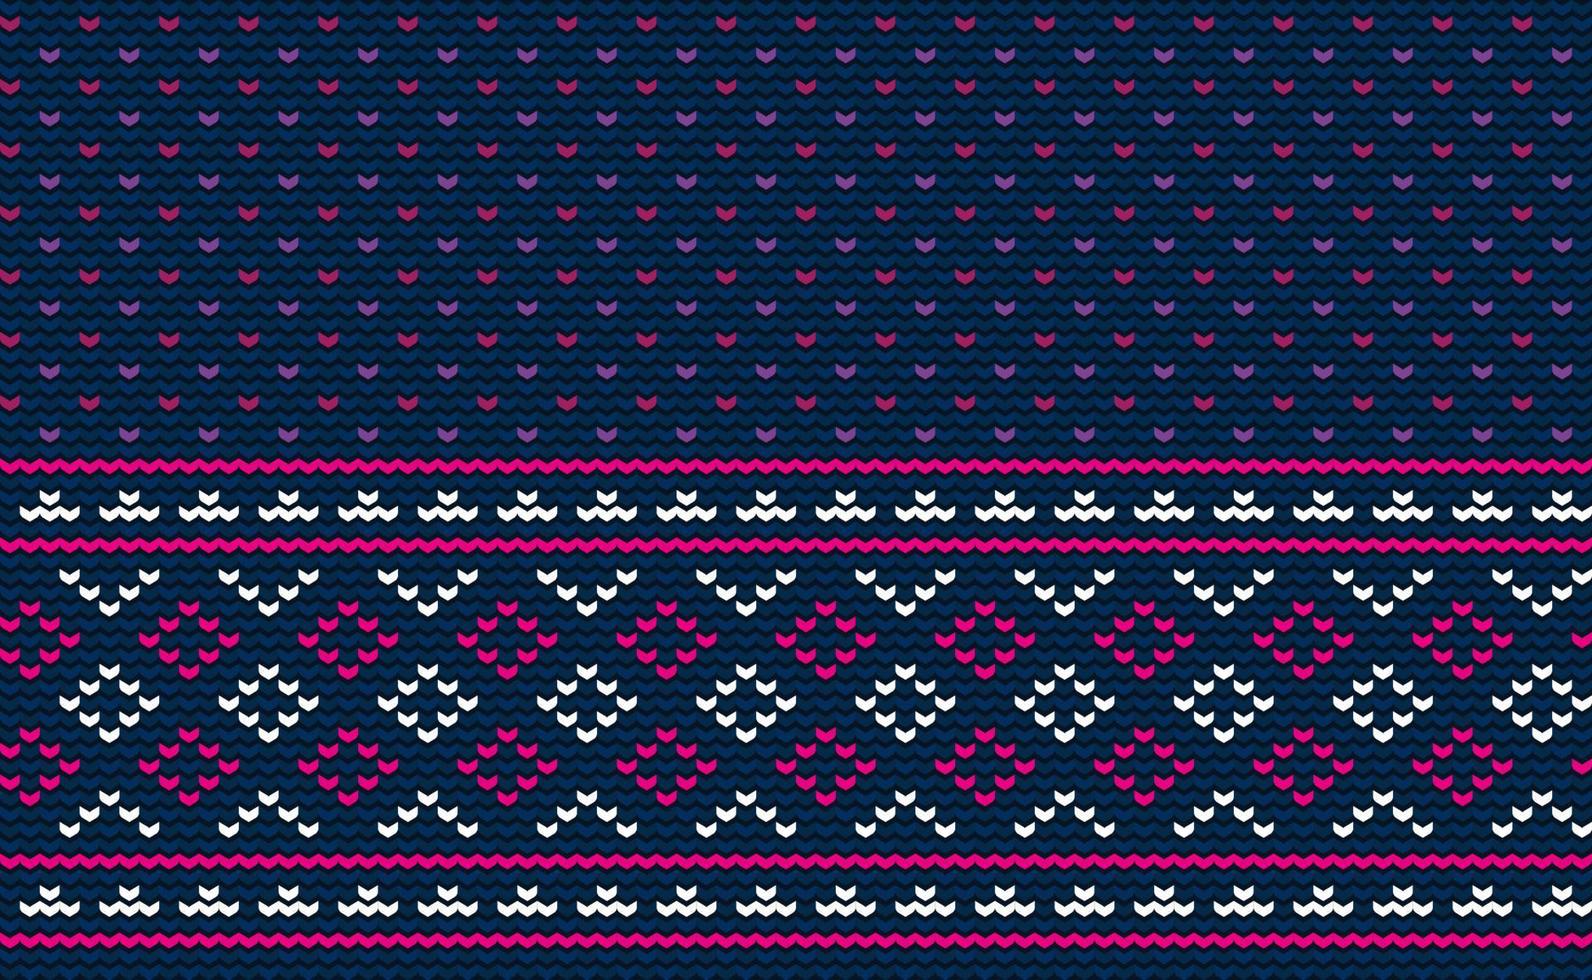 häkeln Muster, Vektor Kreuz Stich Stammes- Hintergrund, gestrickt ethnisch klassisch Ornament Stil